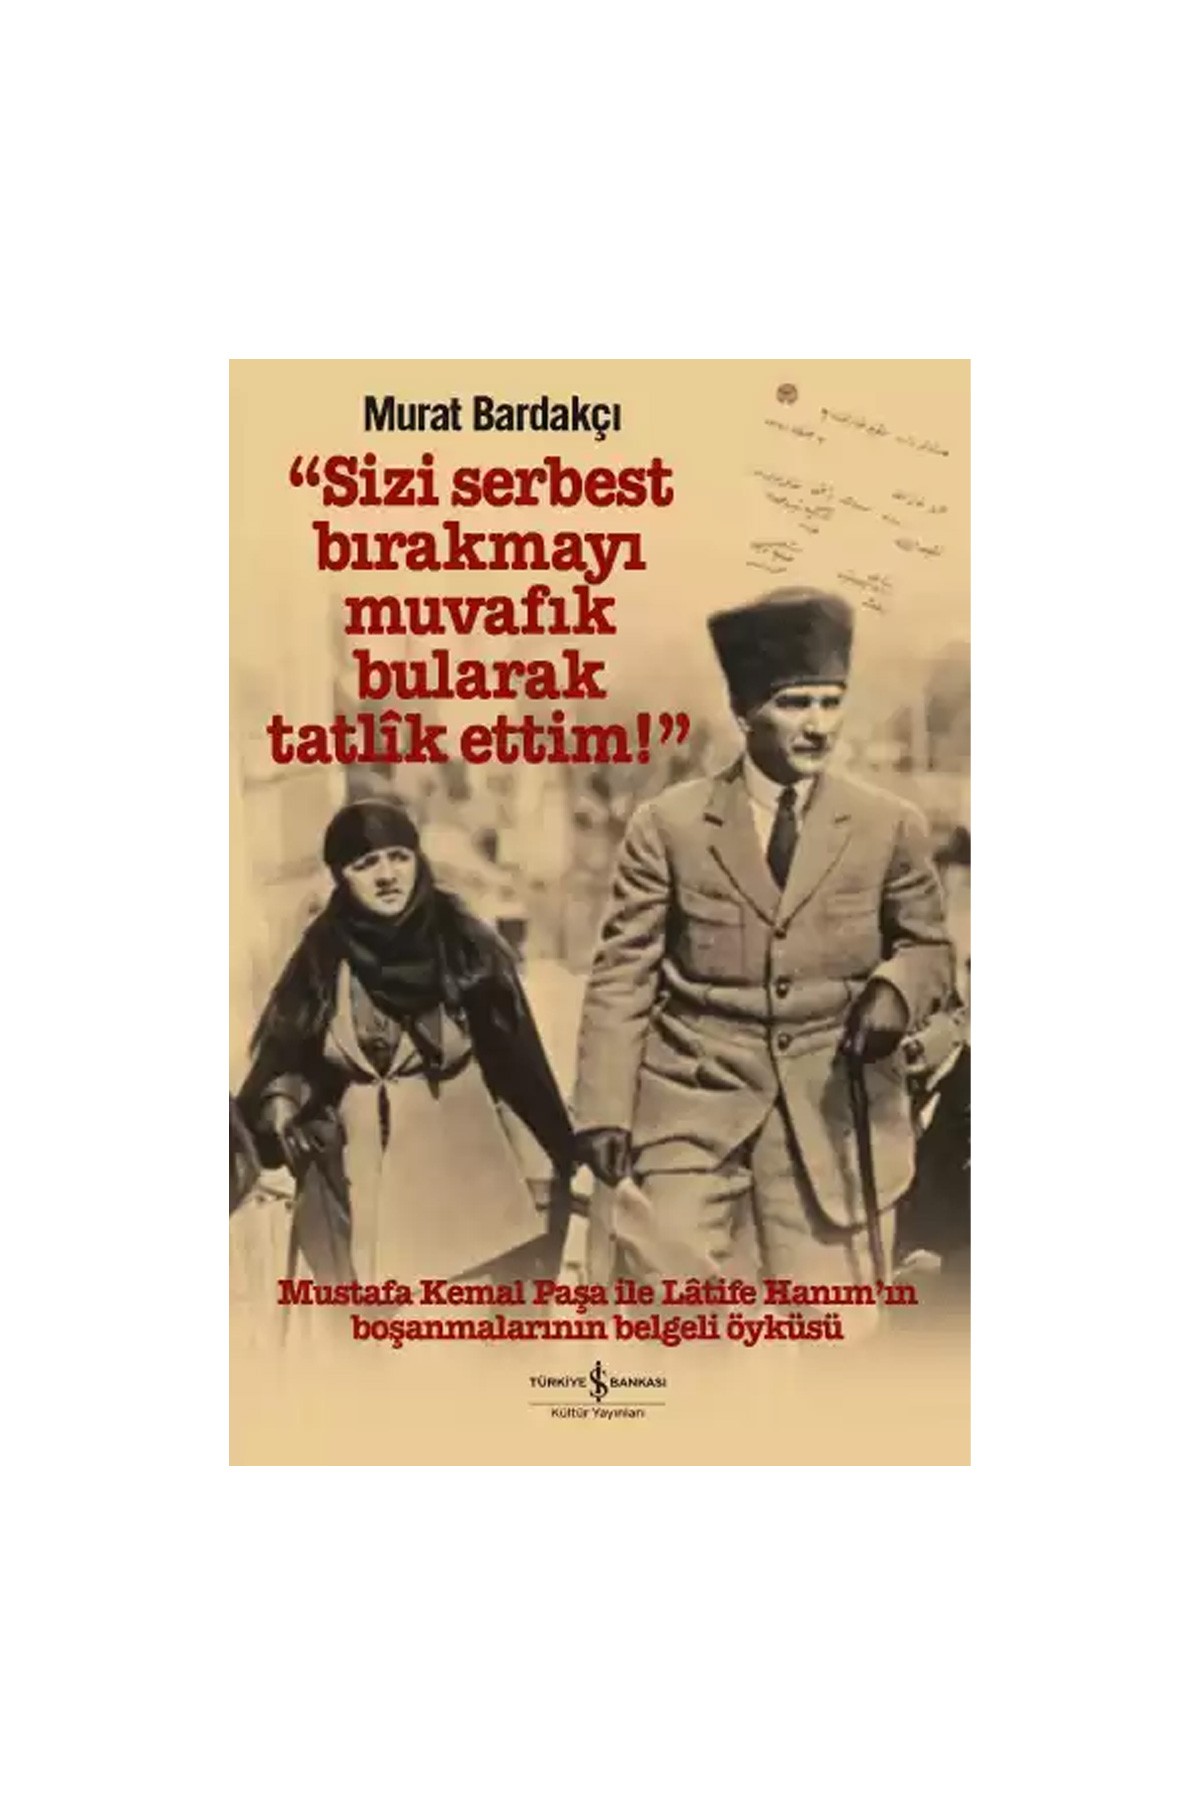 Türkiye İş Bankası Kültür Yayınları “Sizi Serbest Bırakmayı Muvafık Bularak Tatlîk Ettim!”